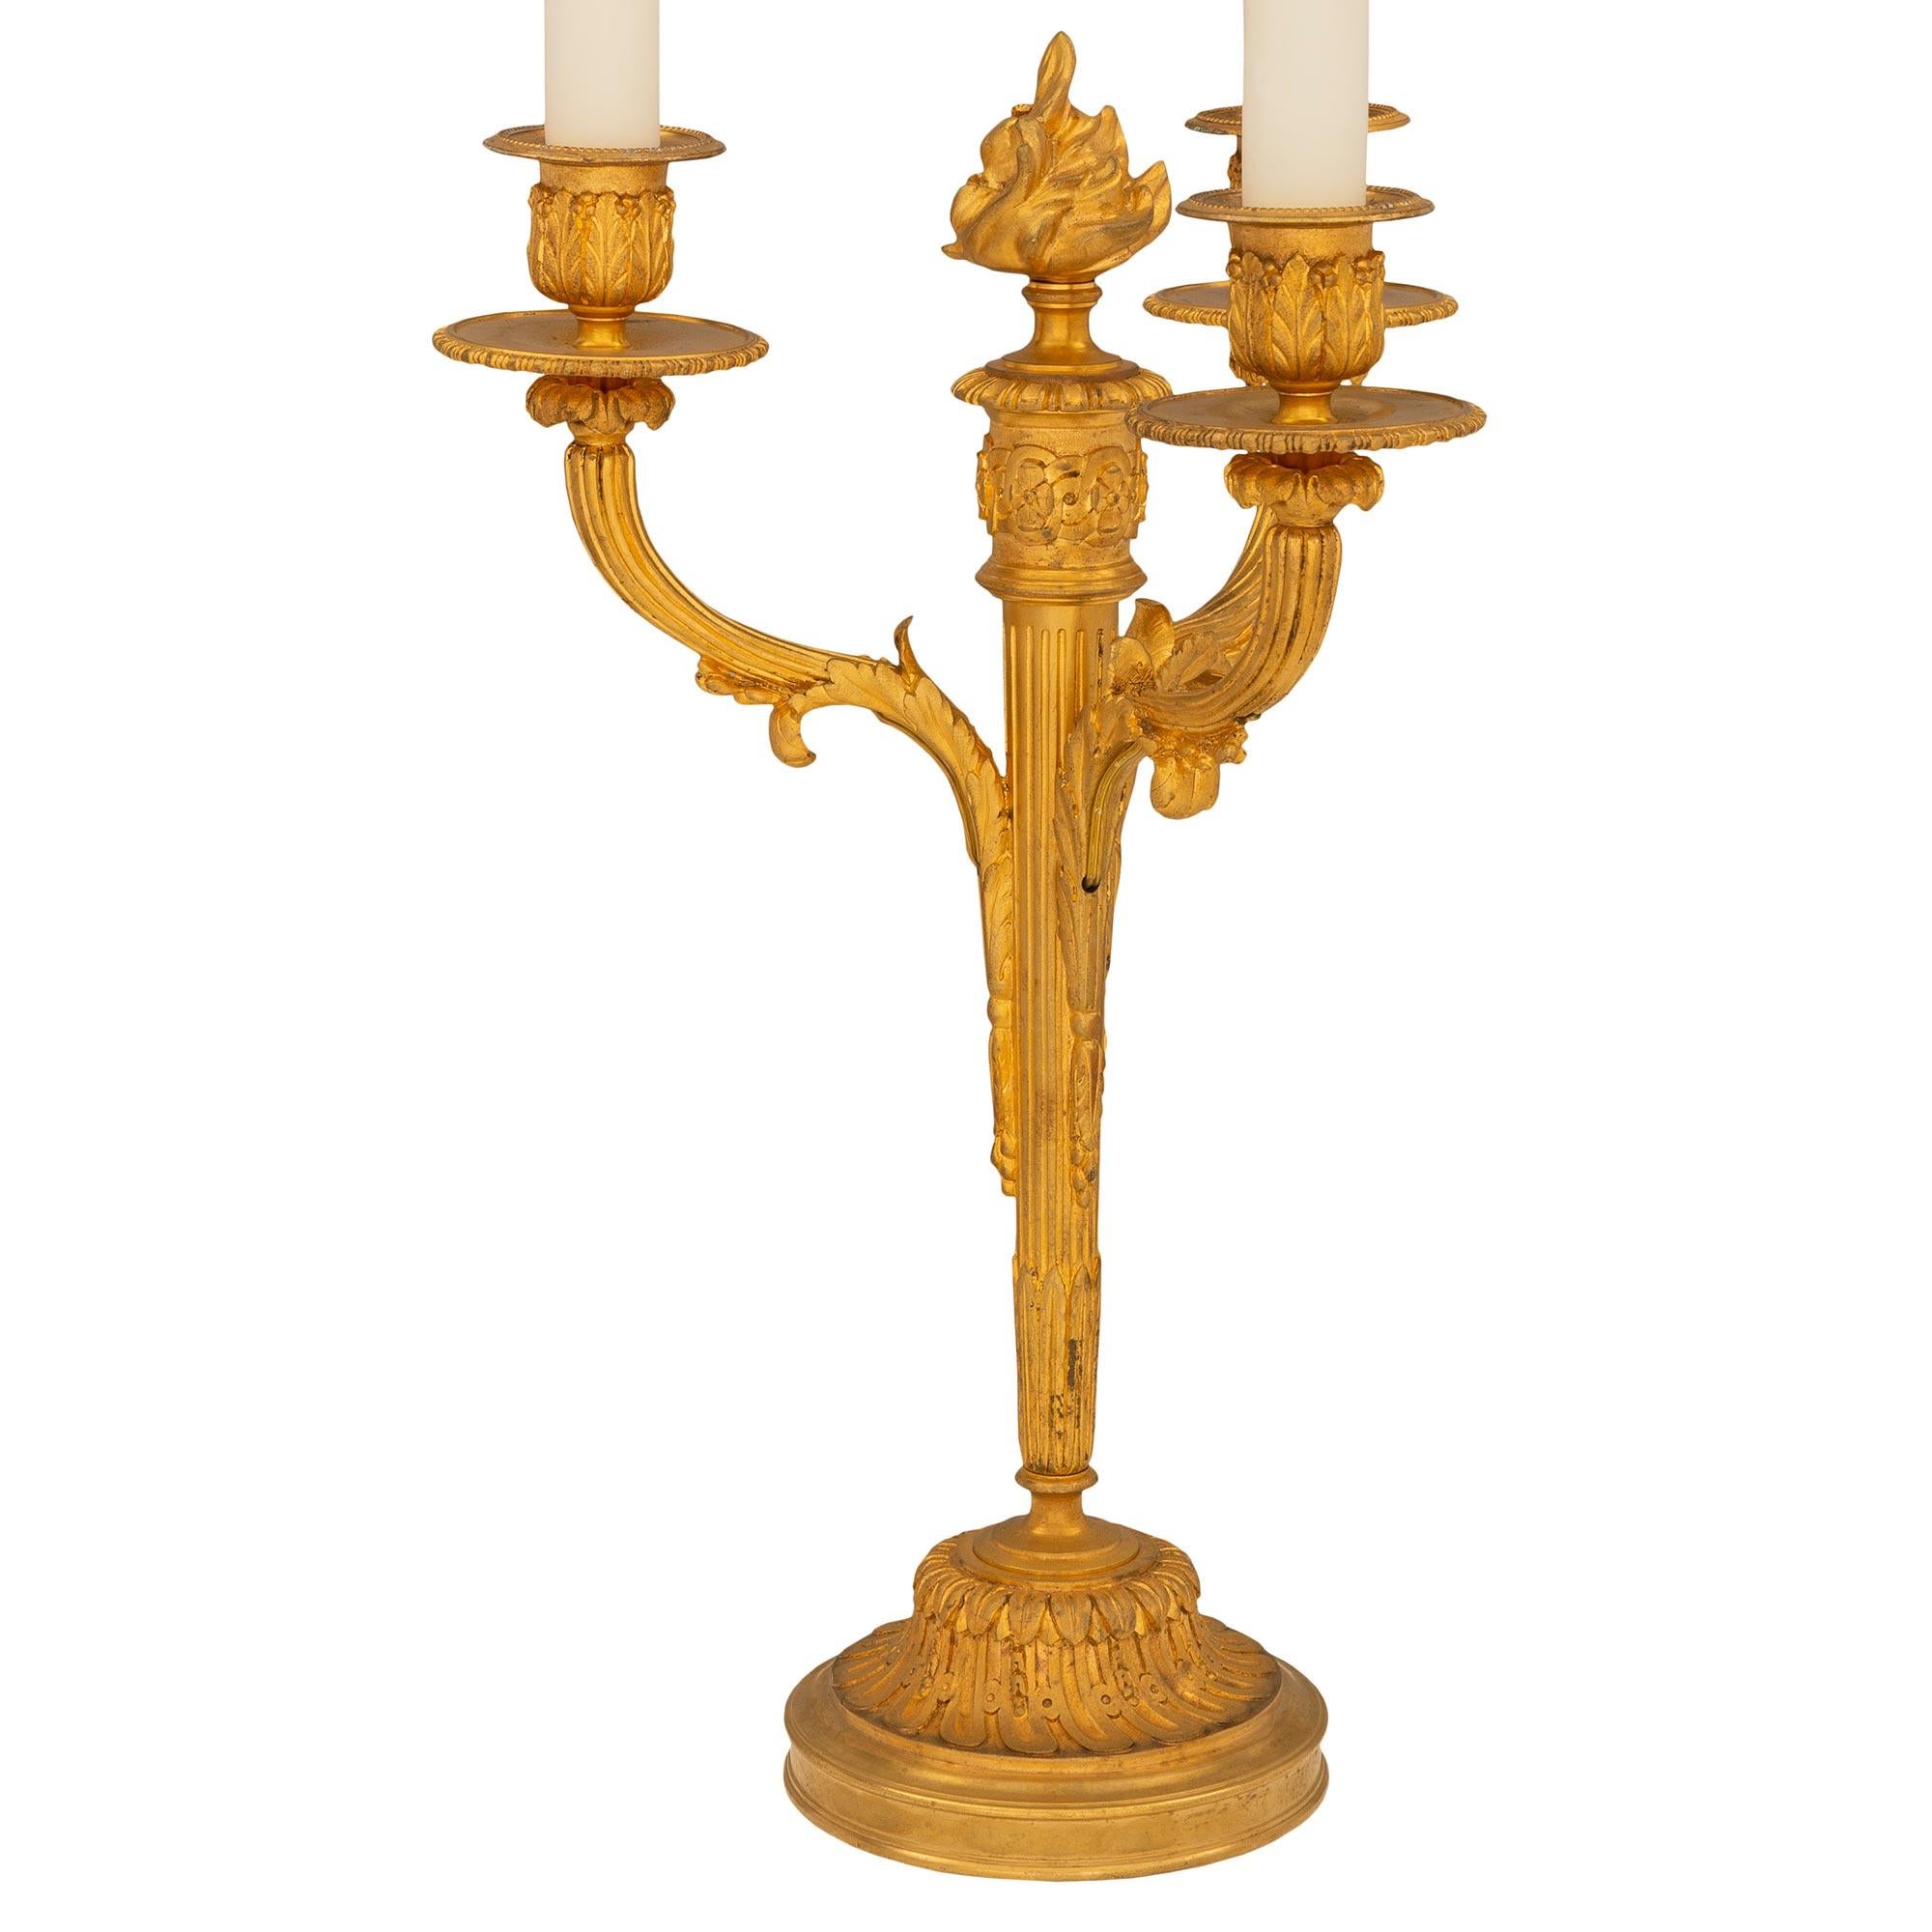 Une très belle paire de lampes candélabres en bronze doré de style Louis XVI du 19ème siècle. Chaque lampe à trois bras est surélevée par une base circulaire avec une fine bordure mouchetée et de magnifiques motifs feuillus cannelés en spirale